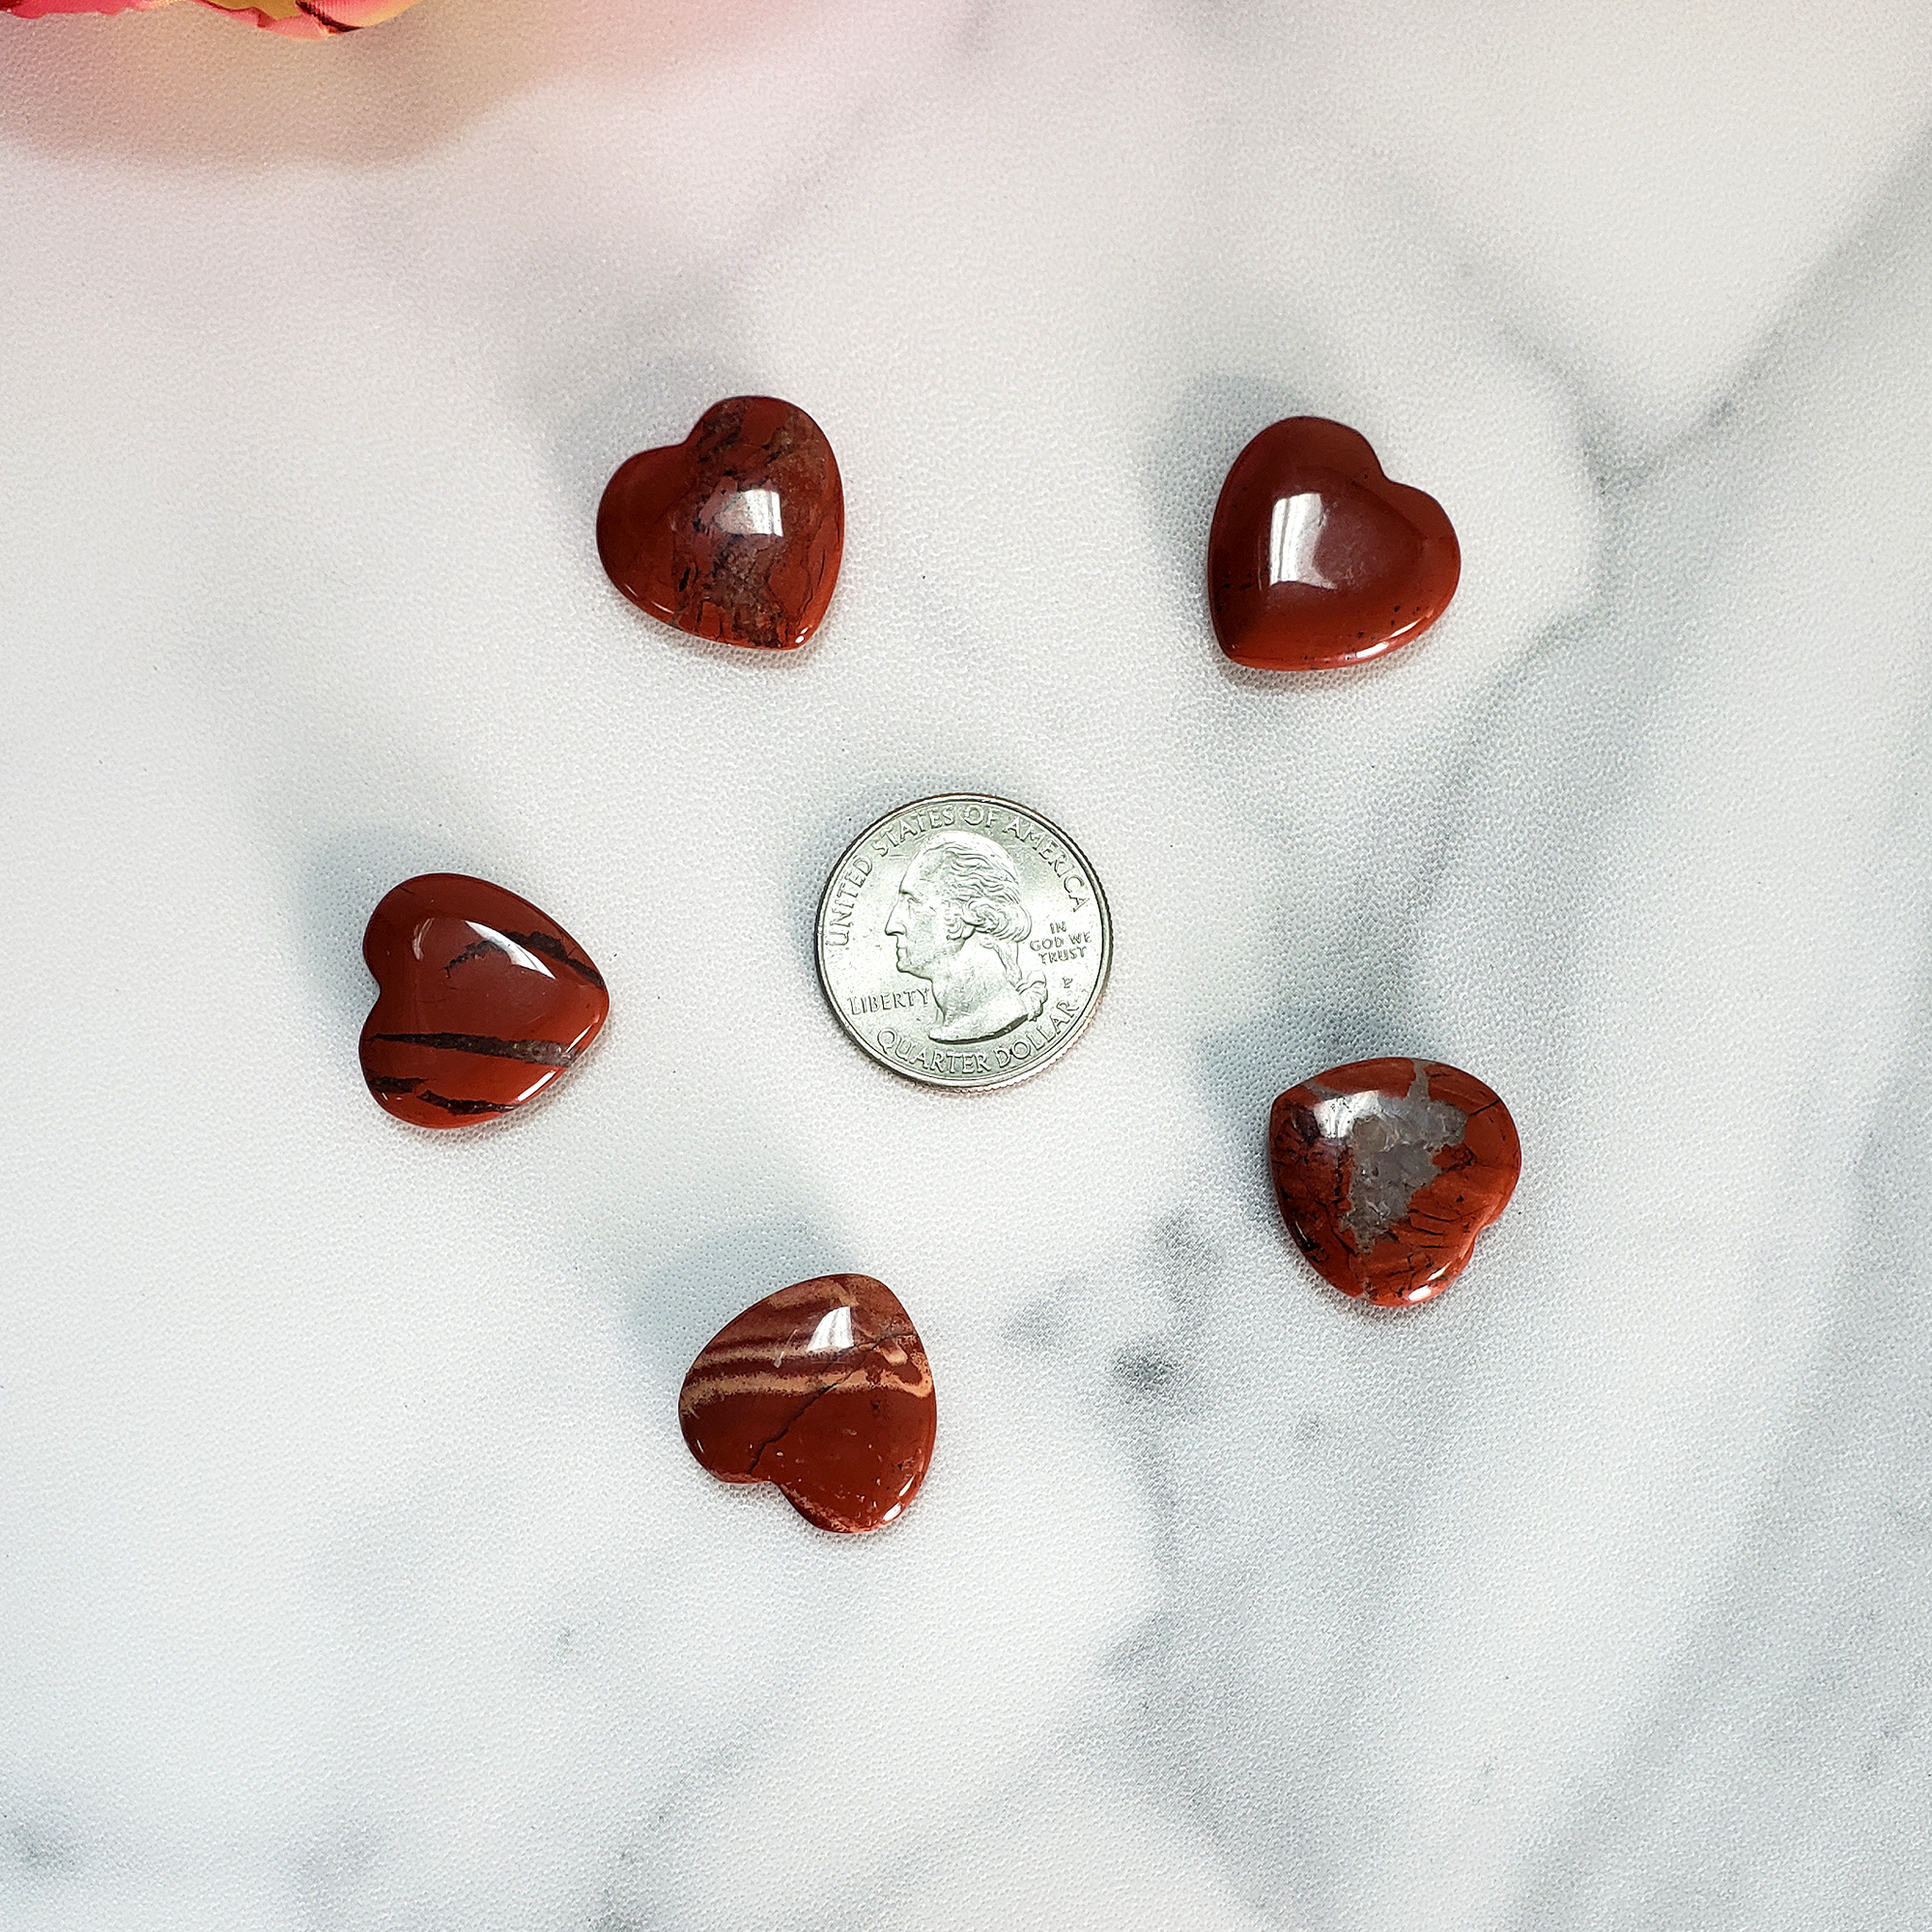 Red Jasper Stone Natural Crystal Heart Mini Carving - Red Jasper Crystal Heart Shaped Carvings Size Comparison